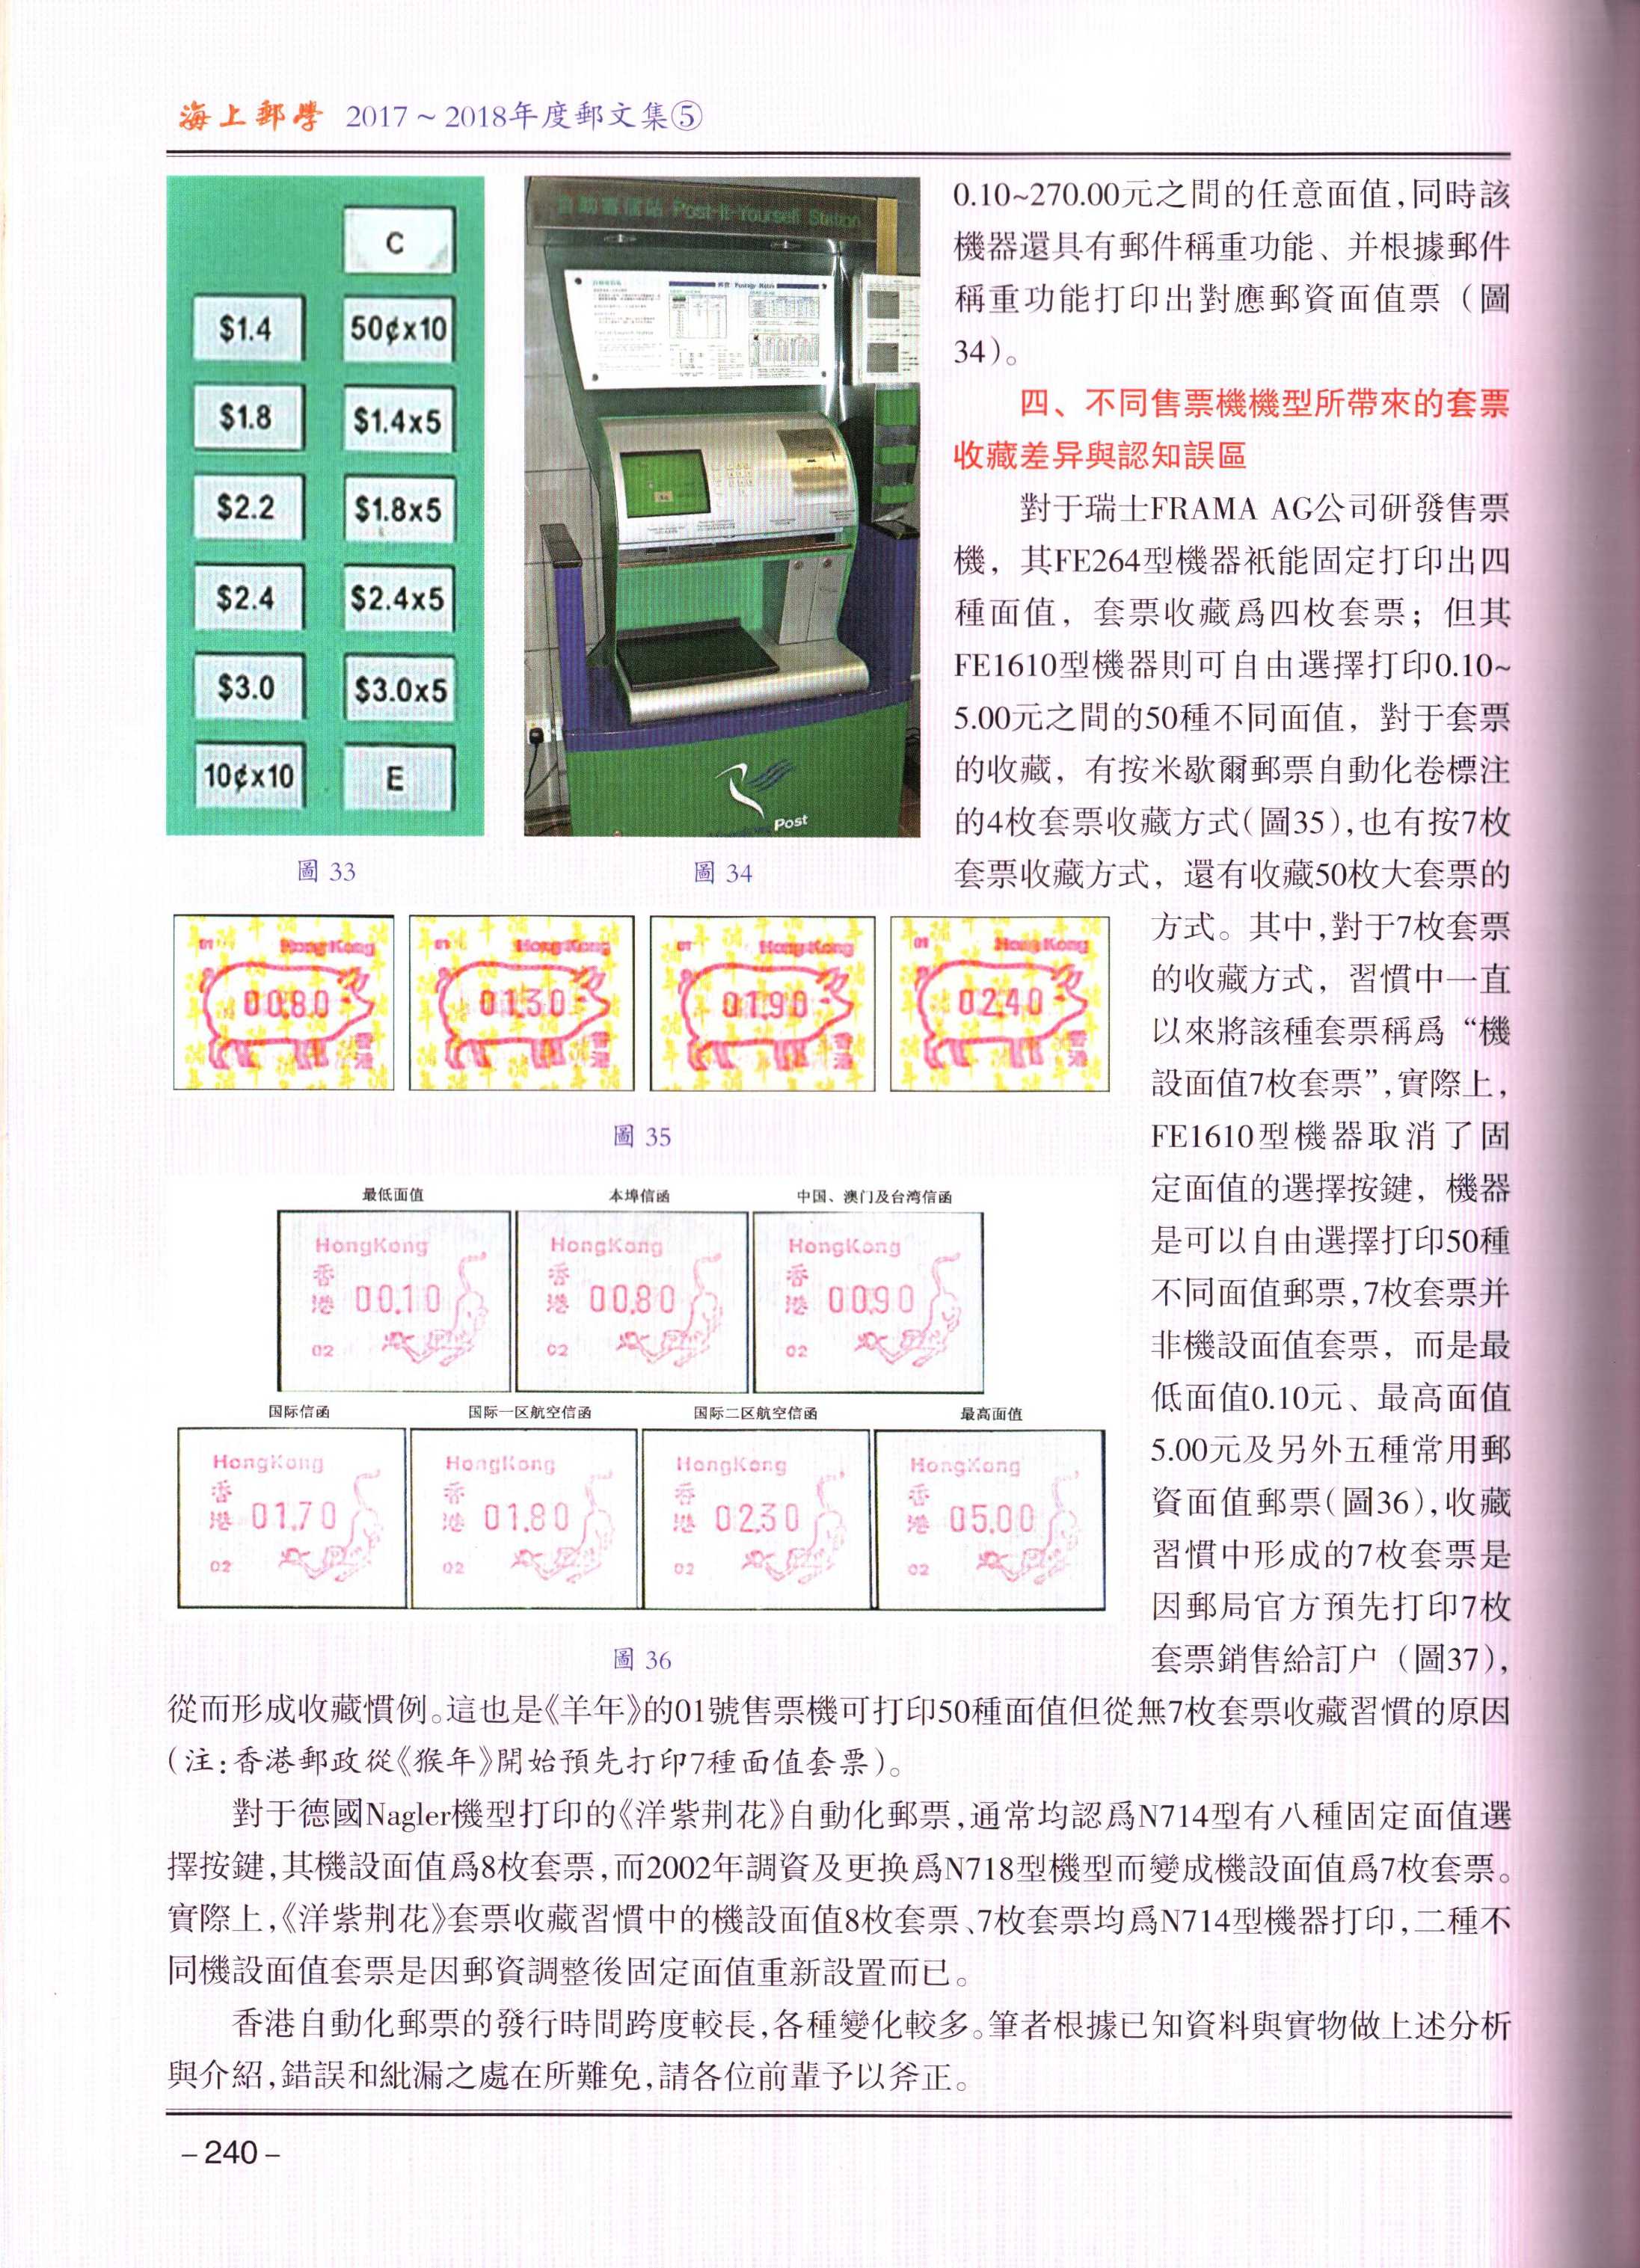 香港回归前后自动化邮票的研究7（海上邮学5）